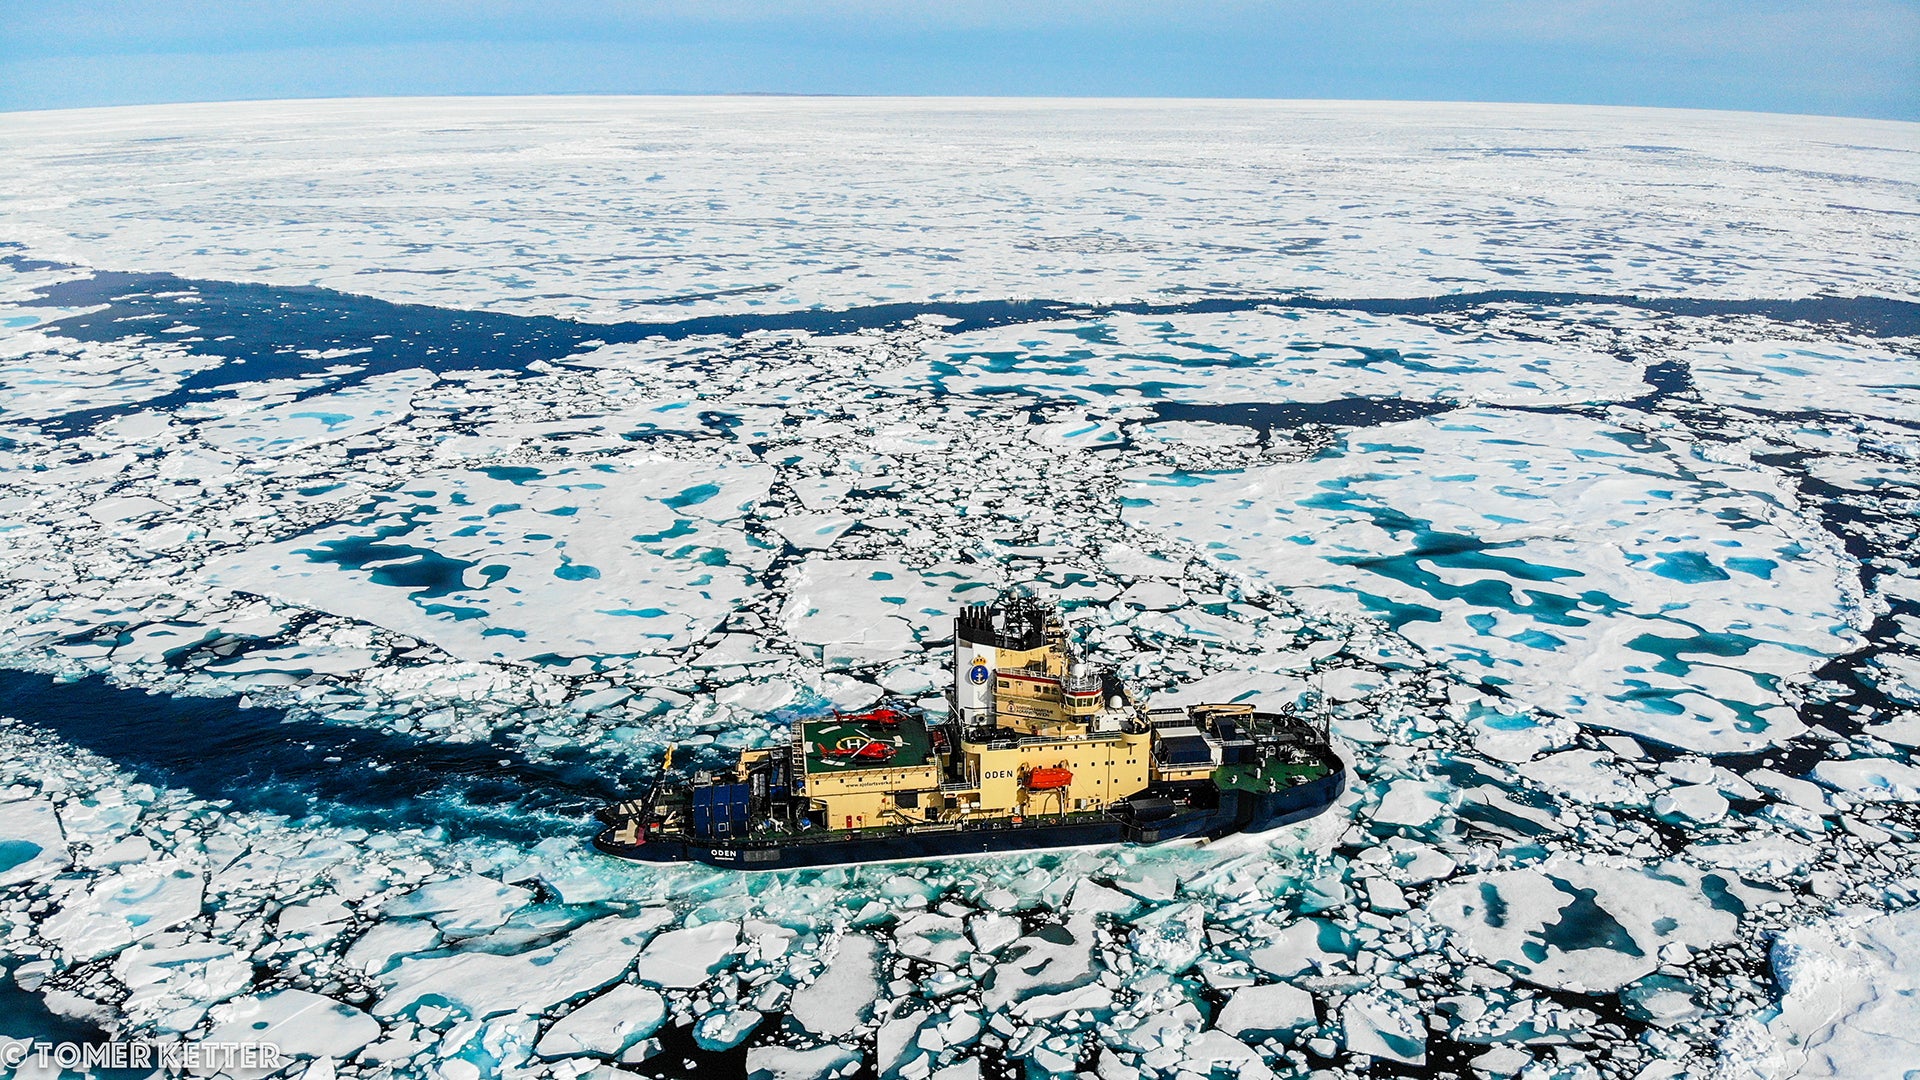 Swedish icebreaker Oden. Photo: Tomer Ketter